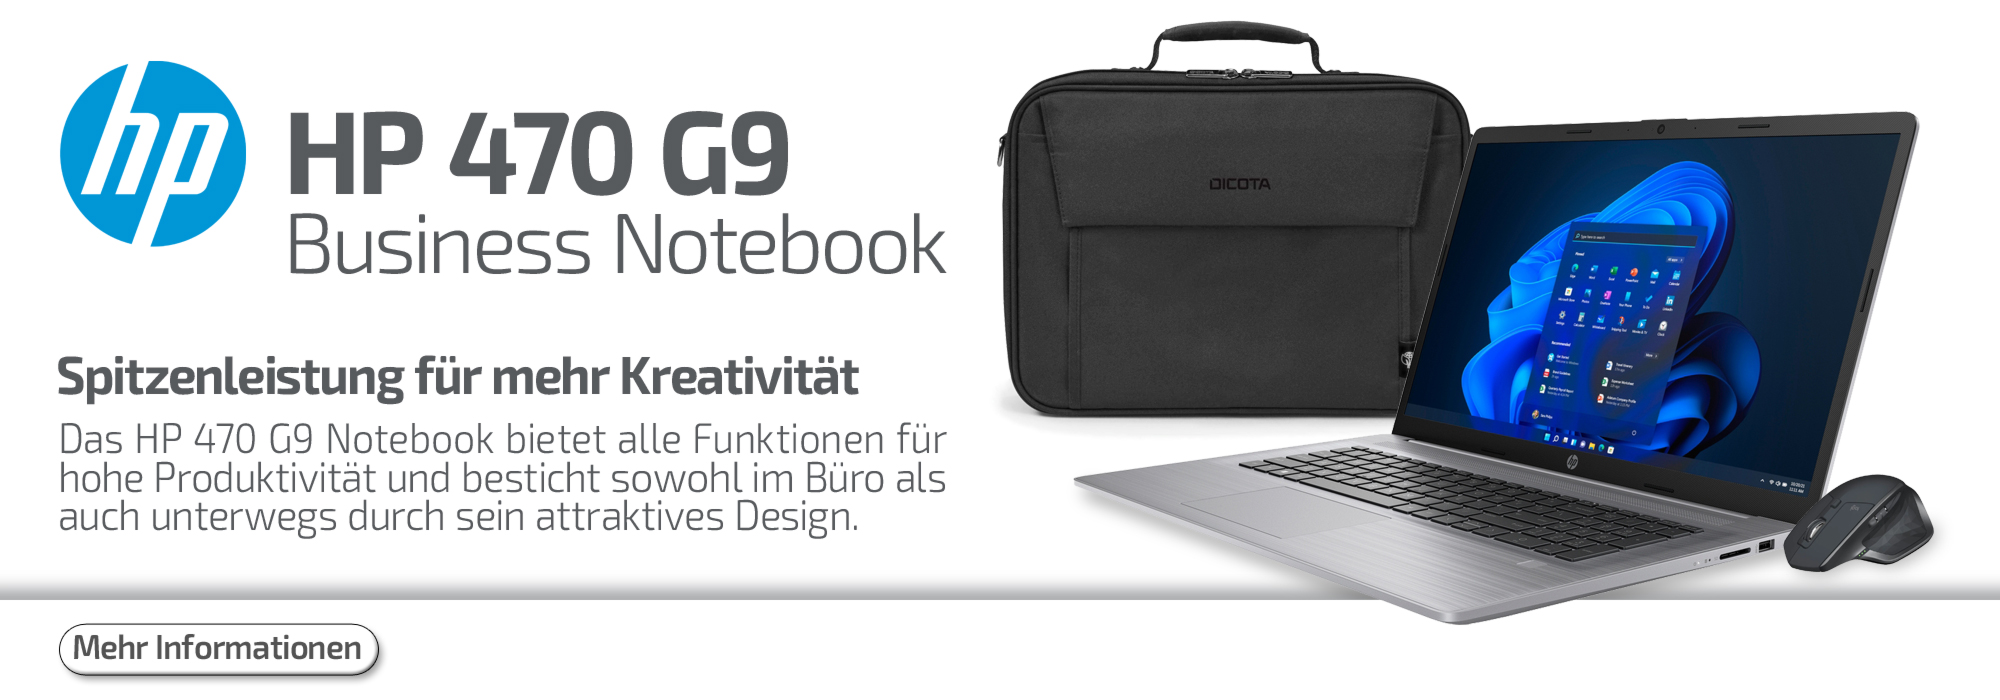 HP 470 G9 Business Notebook